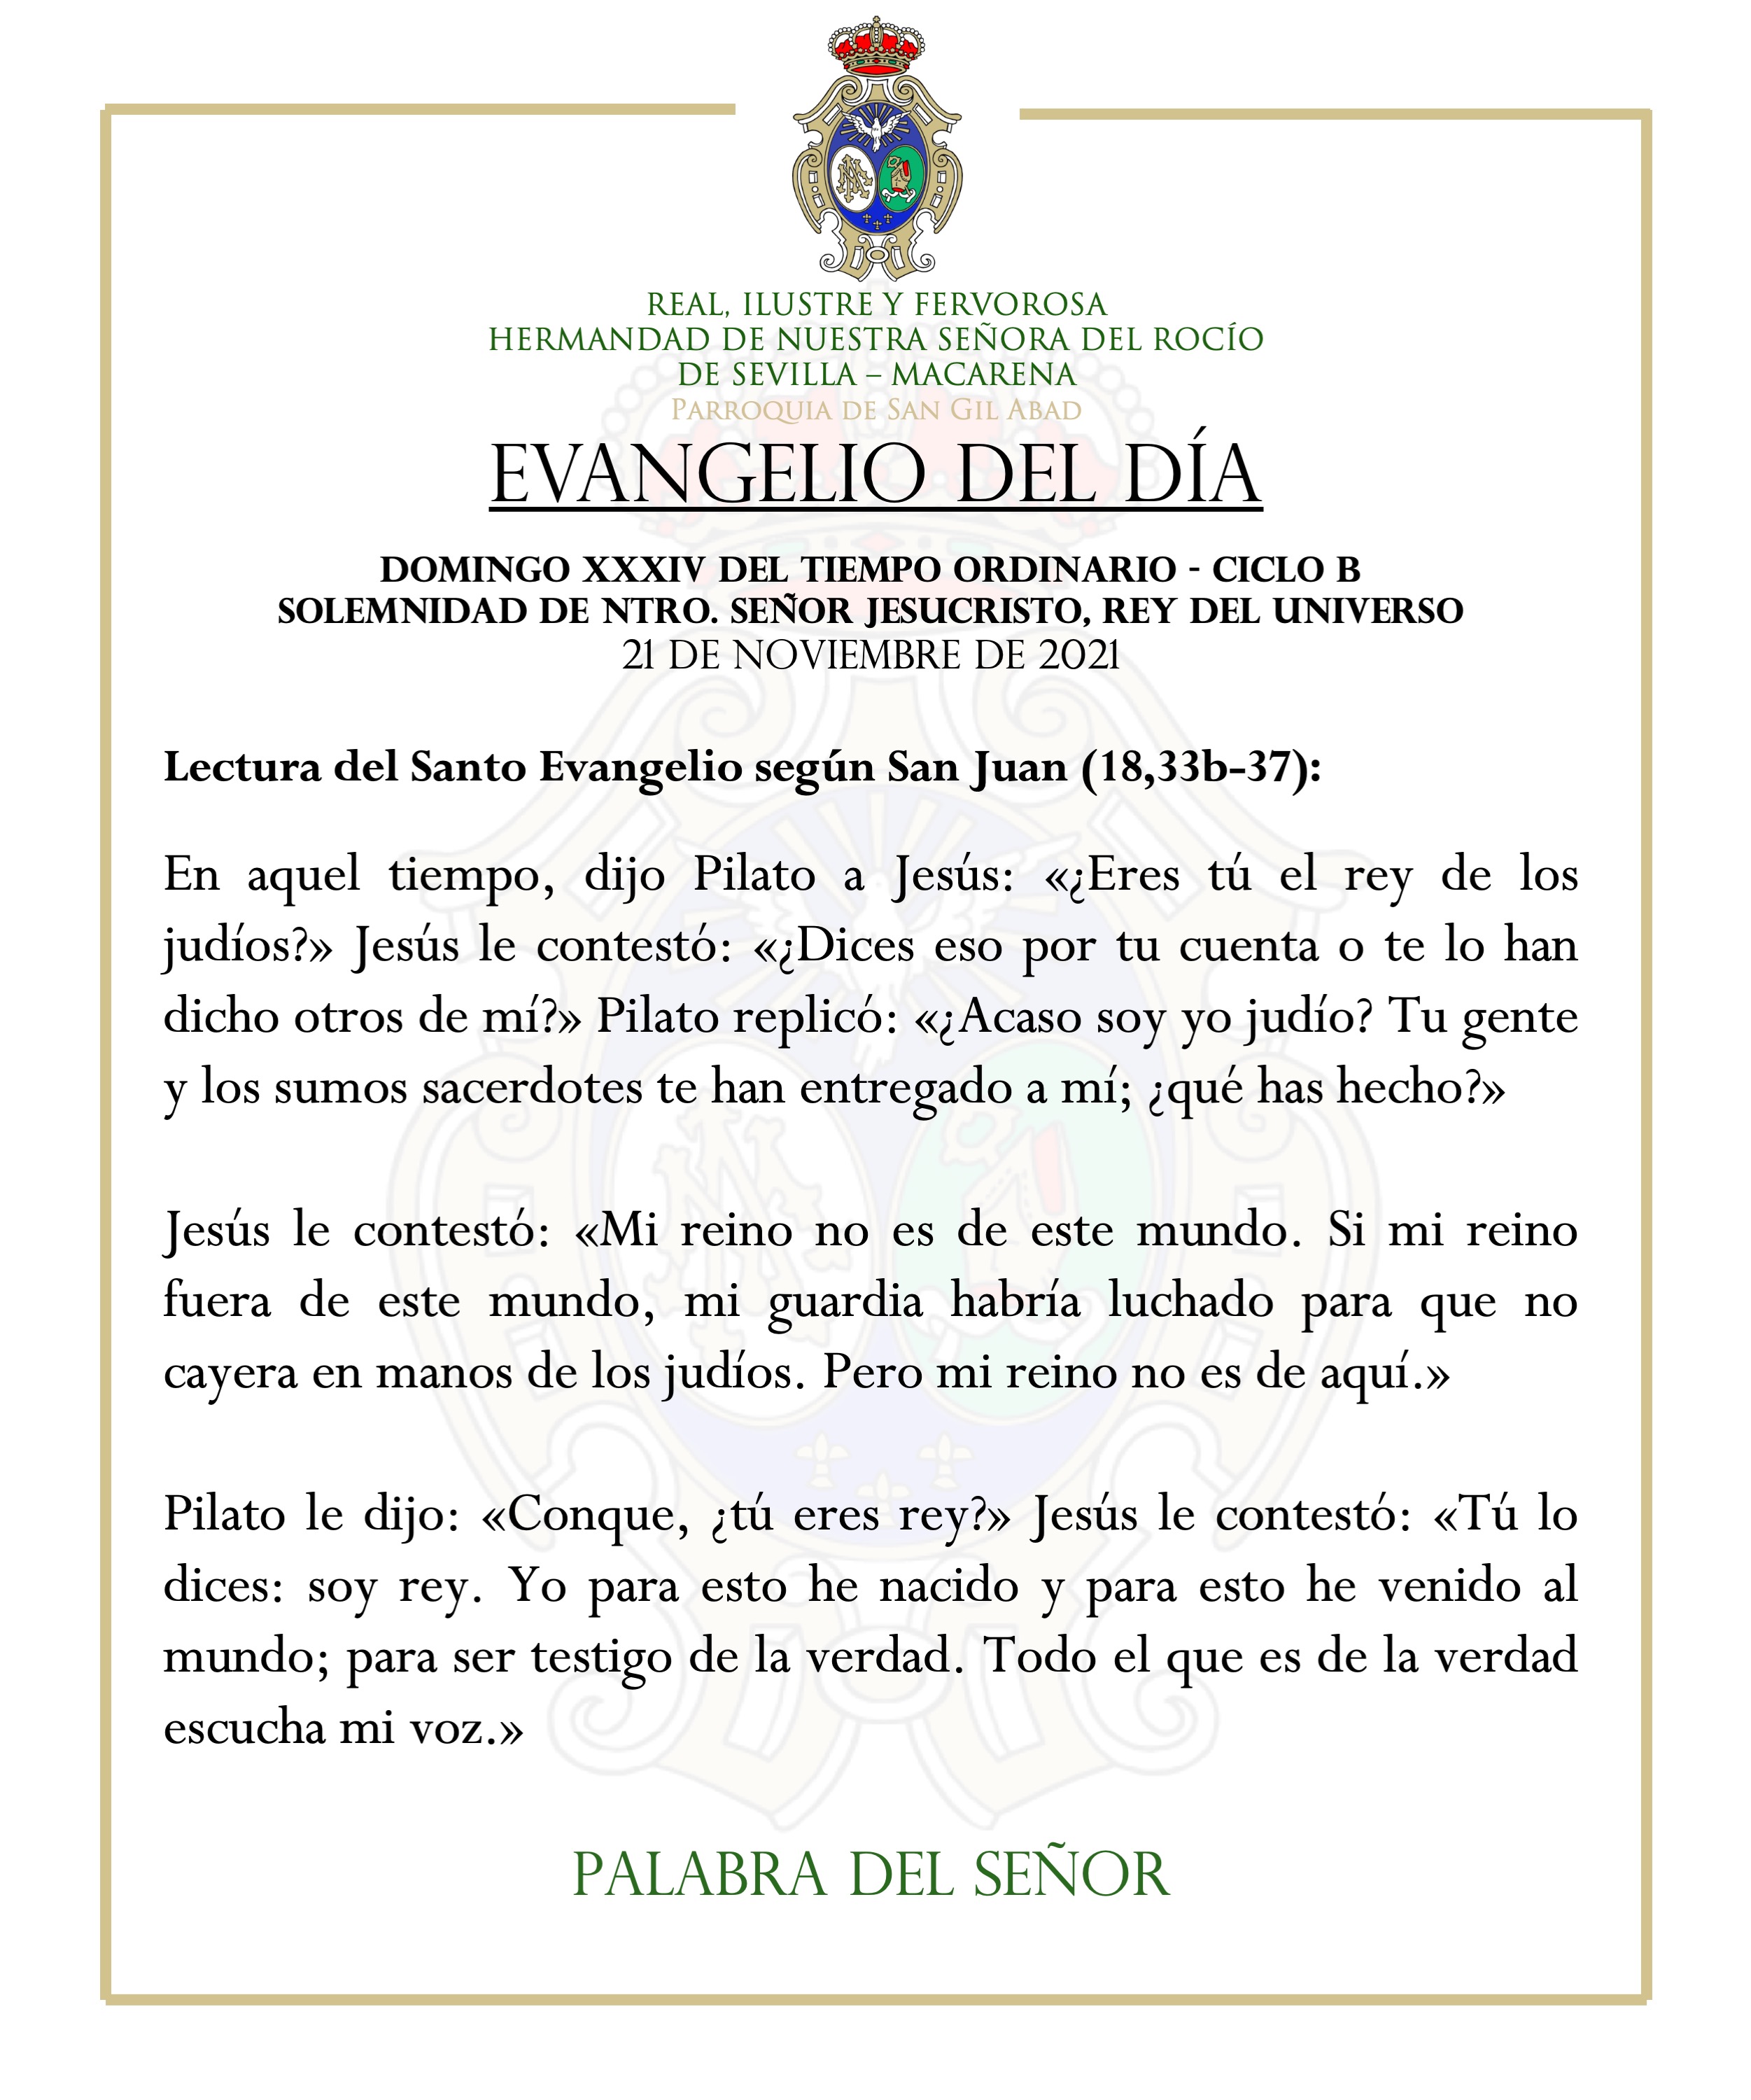 Hermandad del Rocío de la Macarena on X: ASISTENCIA RELIGIOSA